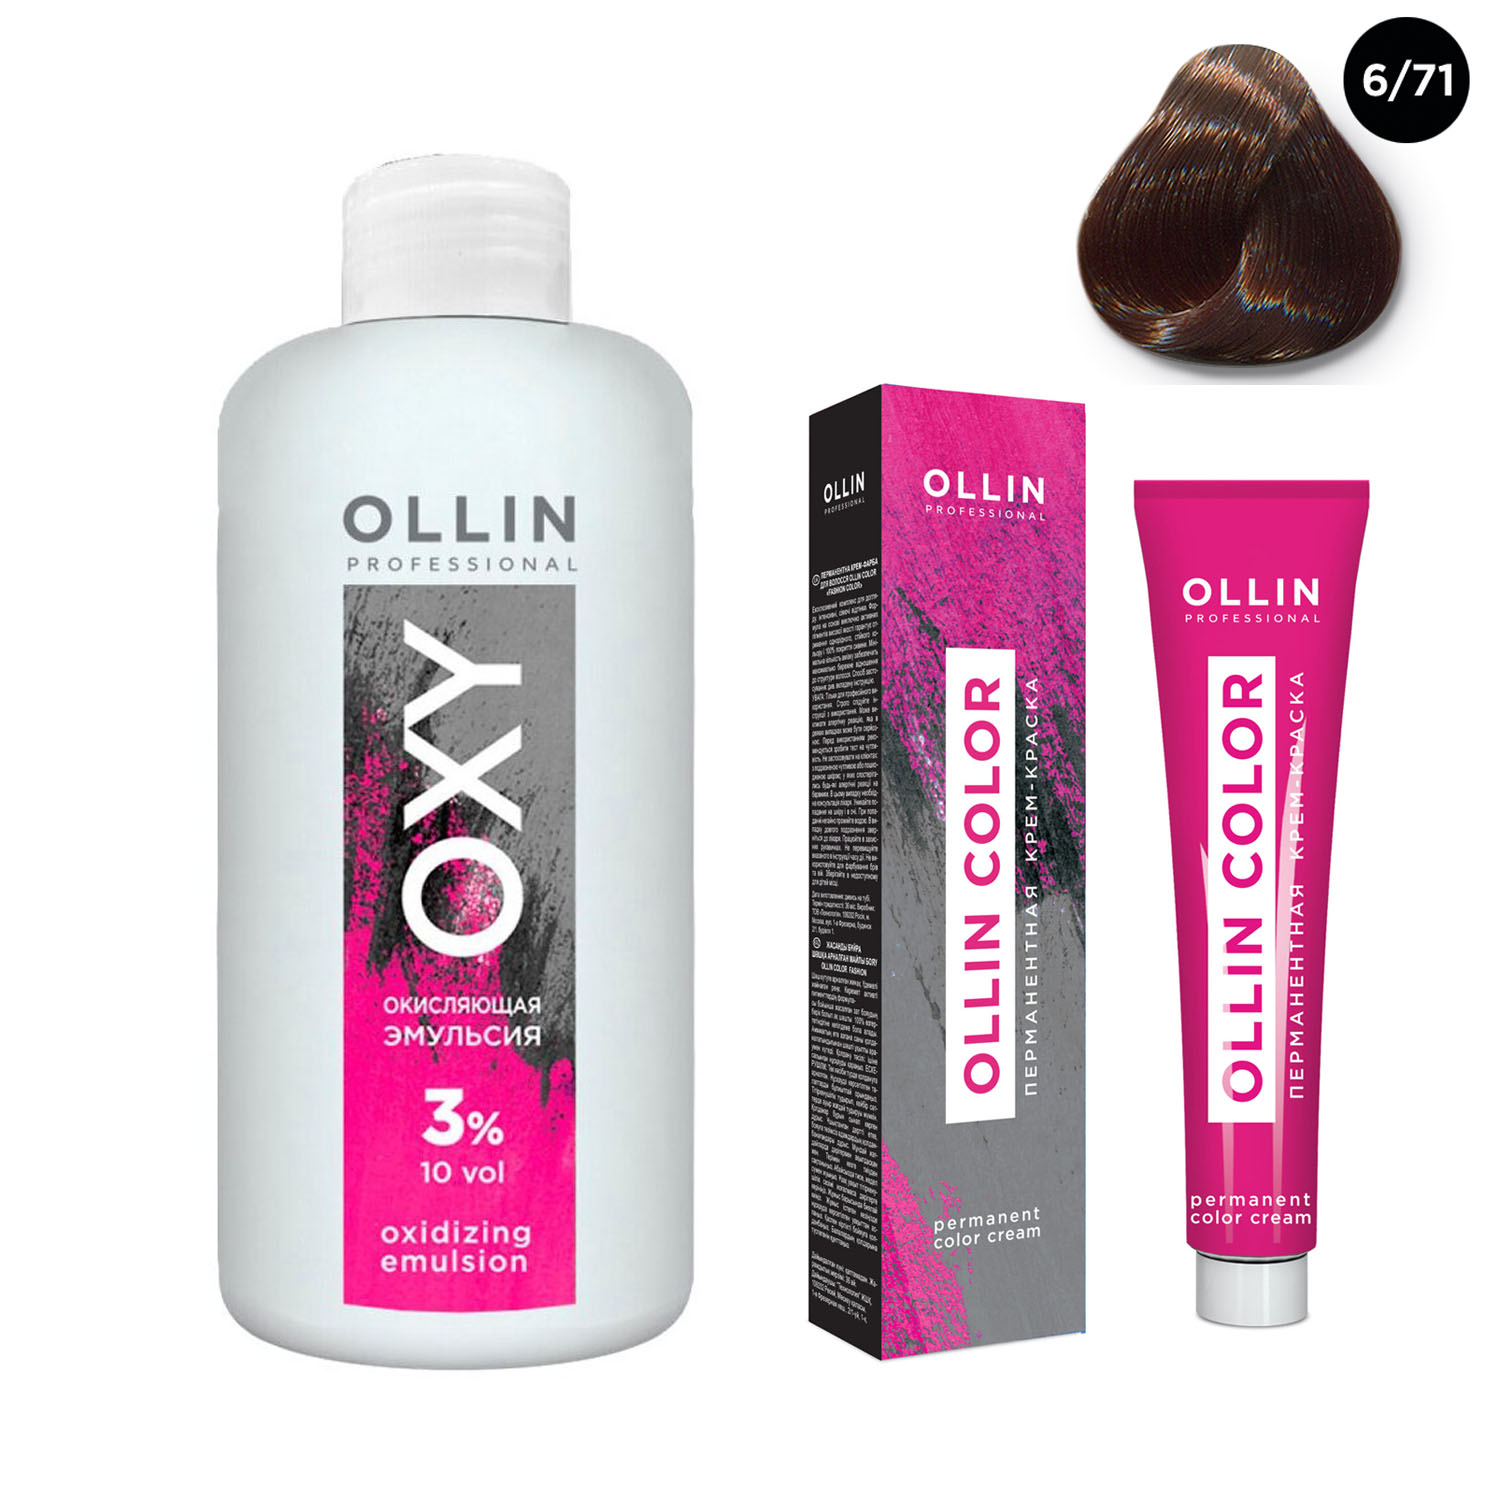 Ollin Professional Набор Перманентная крем-краска для волос Ollin Color оттенок 6/71 темно-русый коричнево-пепельный 100 мл + Окисляющая эмульсия Oxy 3% 150 мл (Ollin Professional, Ollin Color)